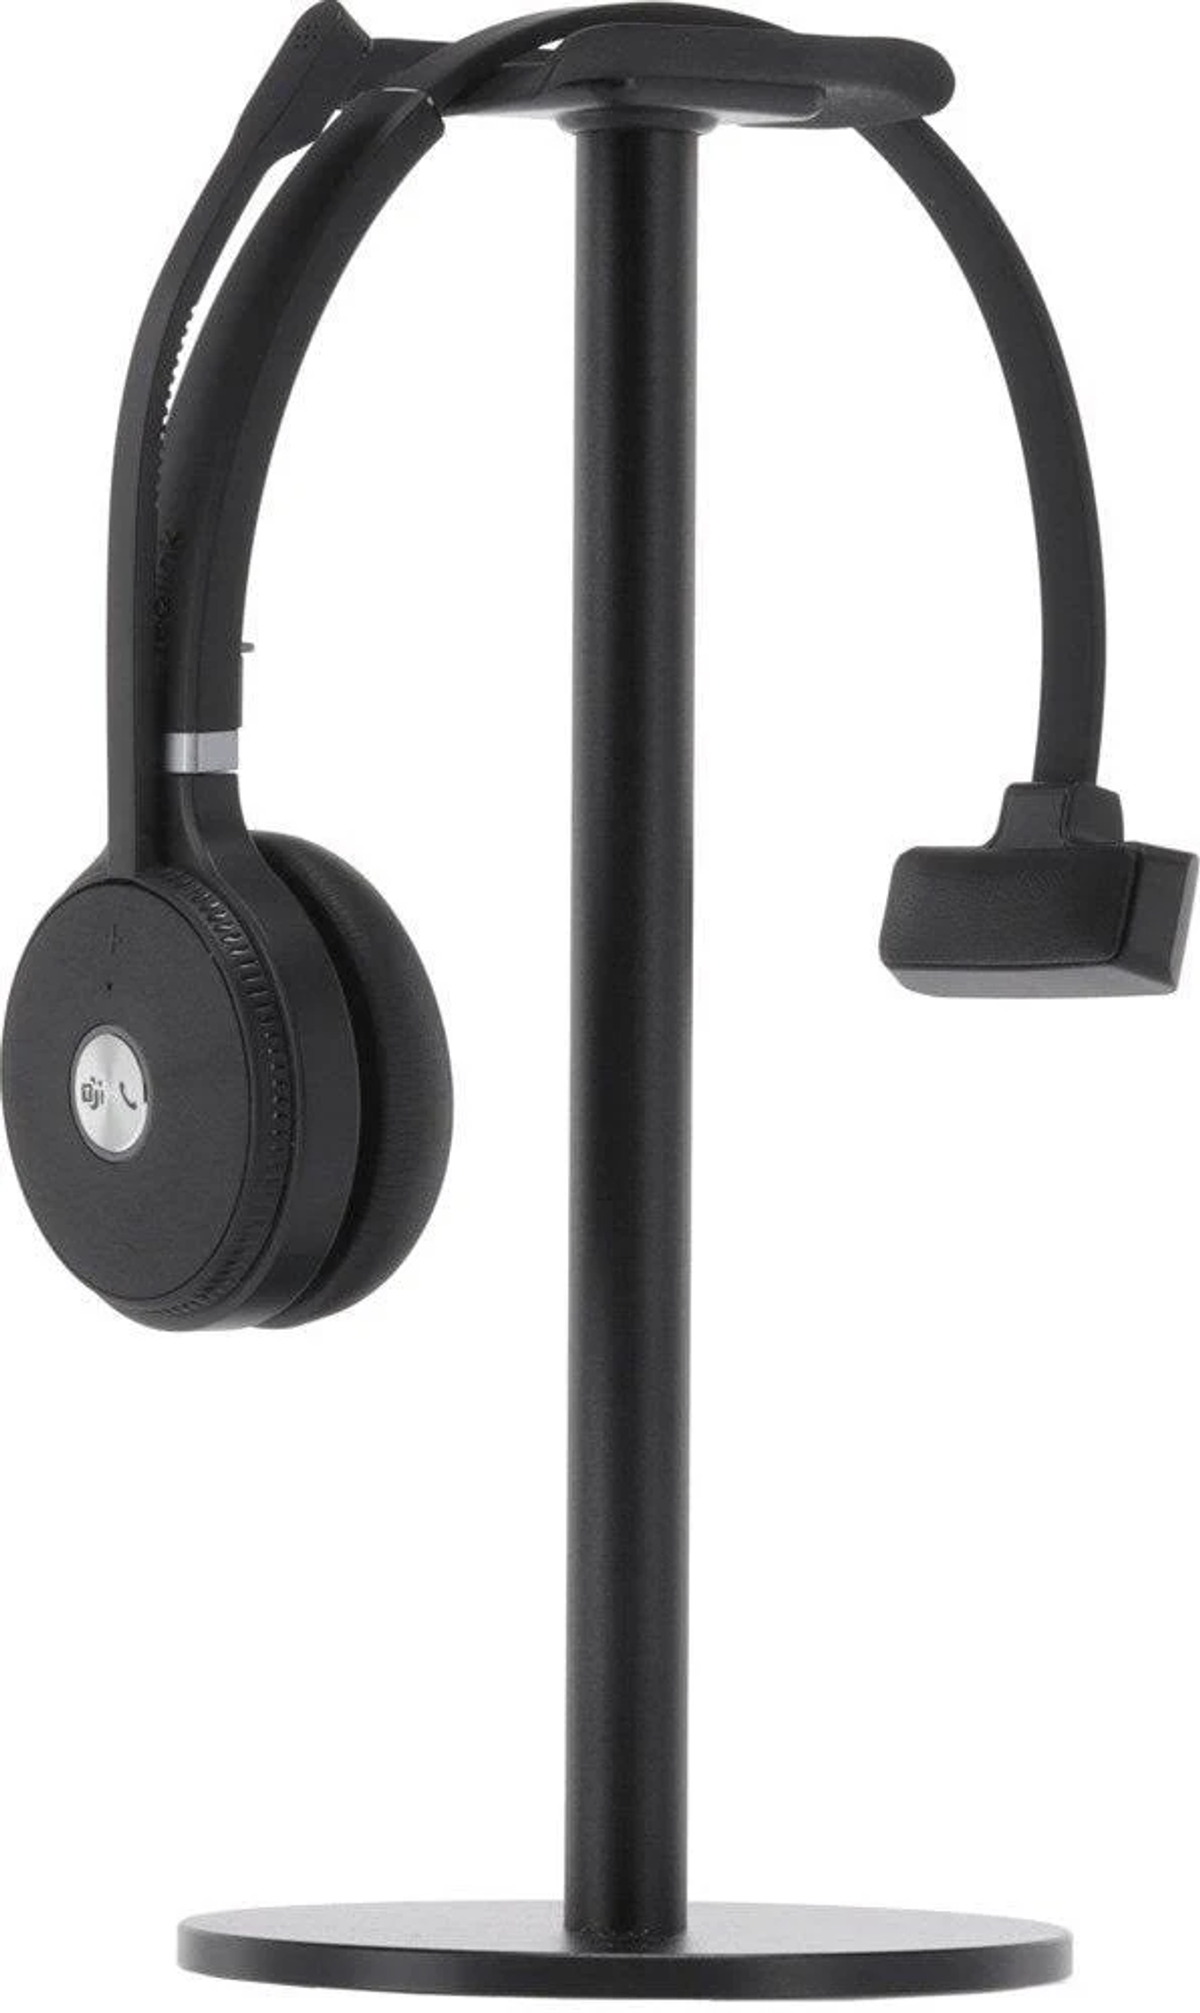 YEALINK 1208642, On-ear Schwarz Bluetooth Kopfhörer